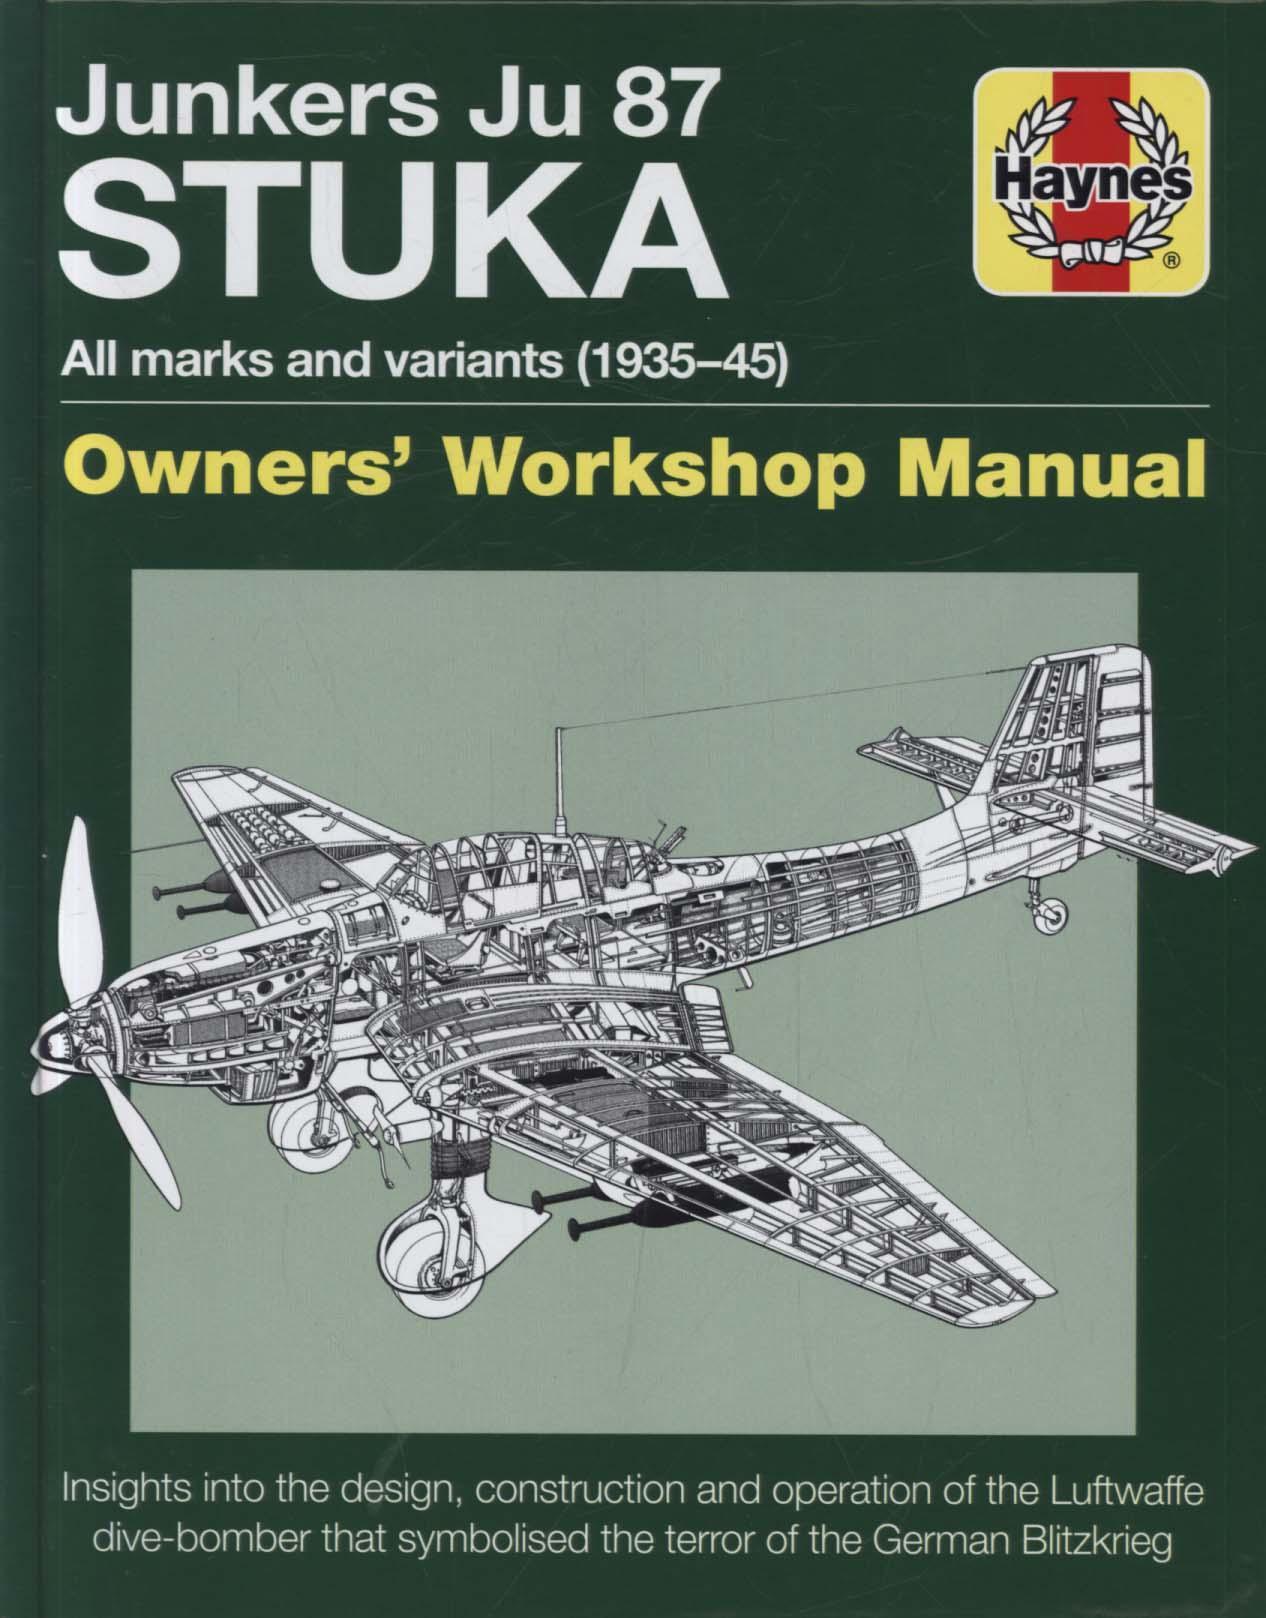 Junkers JU 87 ' Stuka' Manual